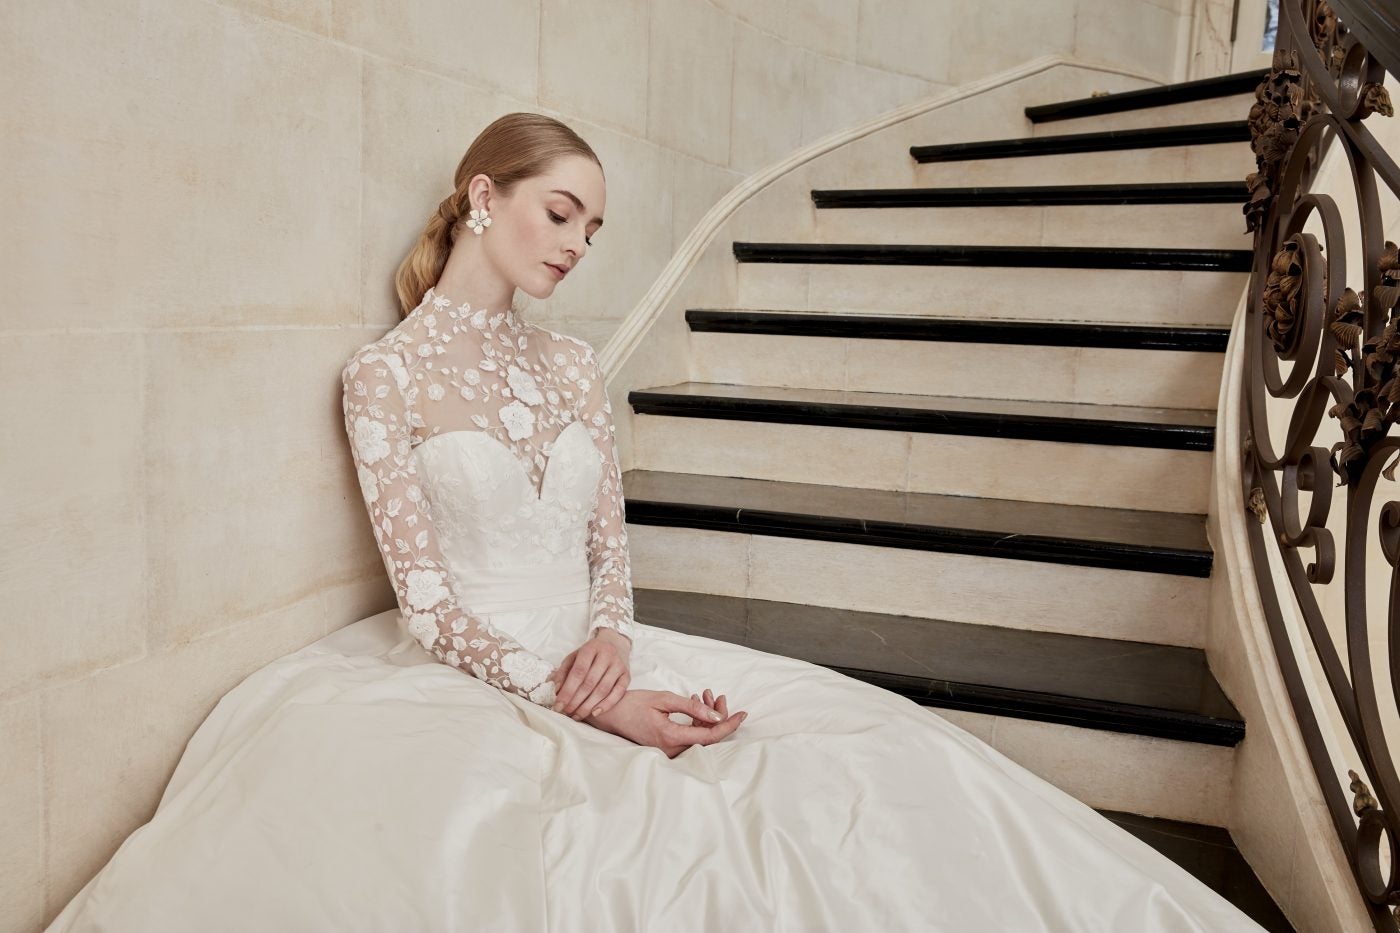 16 Corset Wedding Dresses for a Regal Look